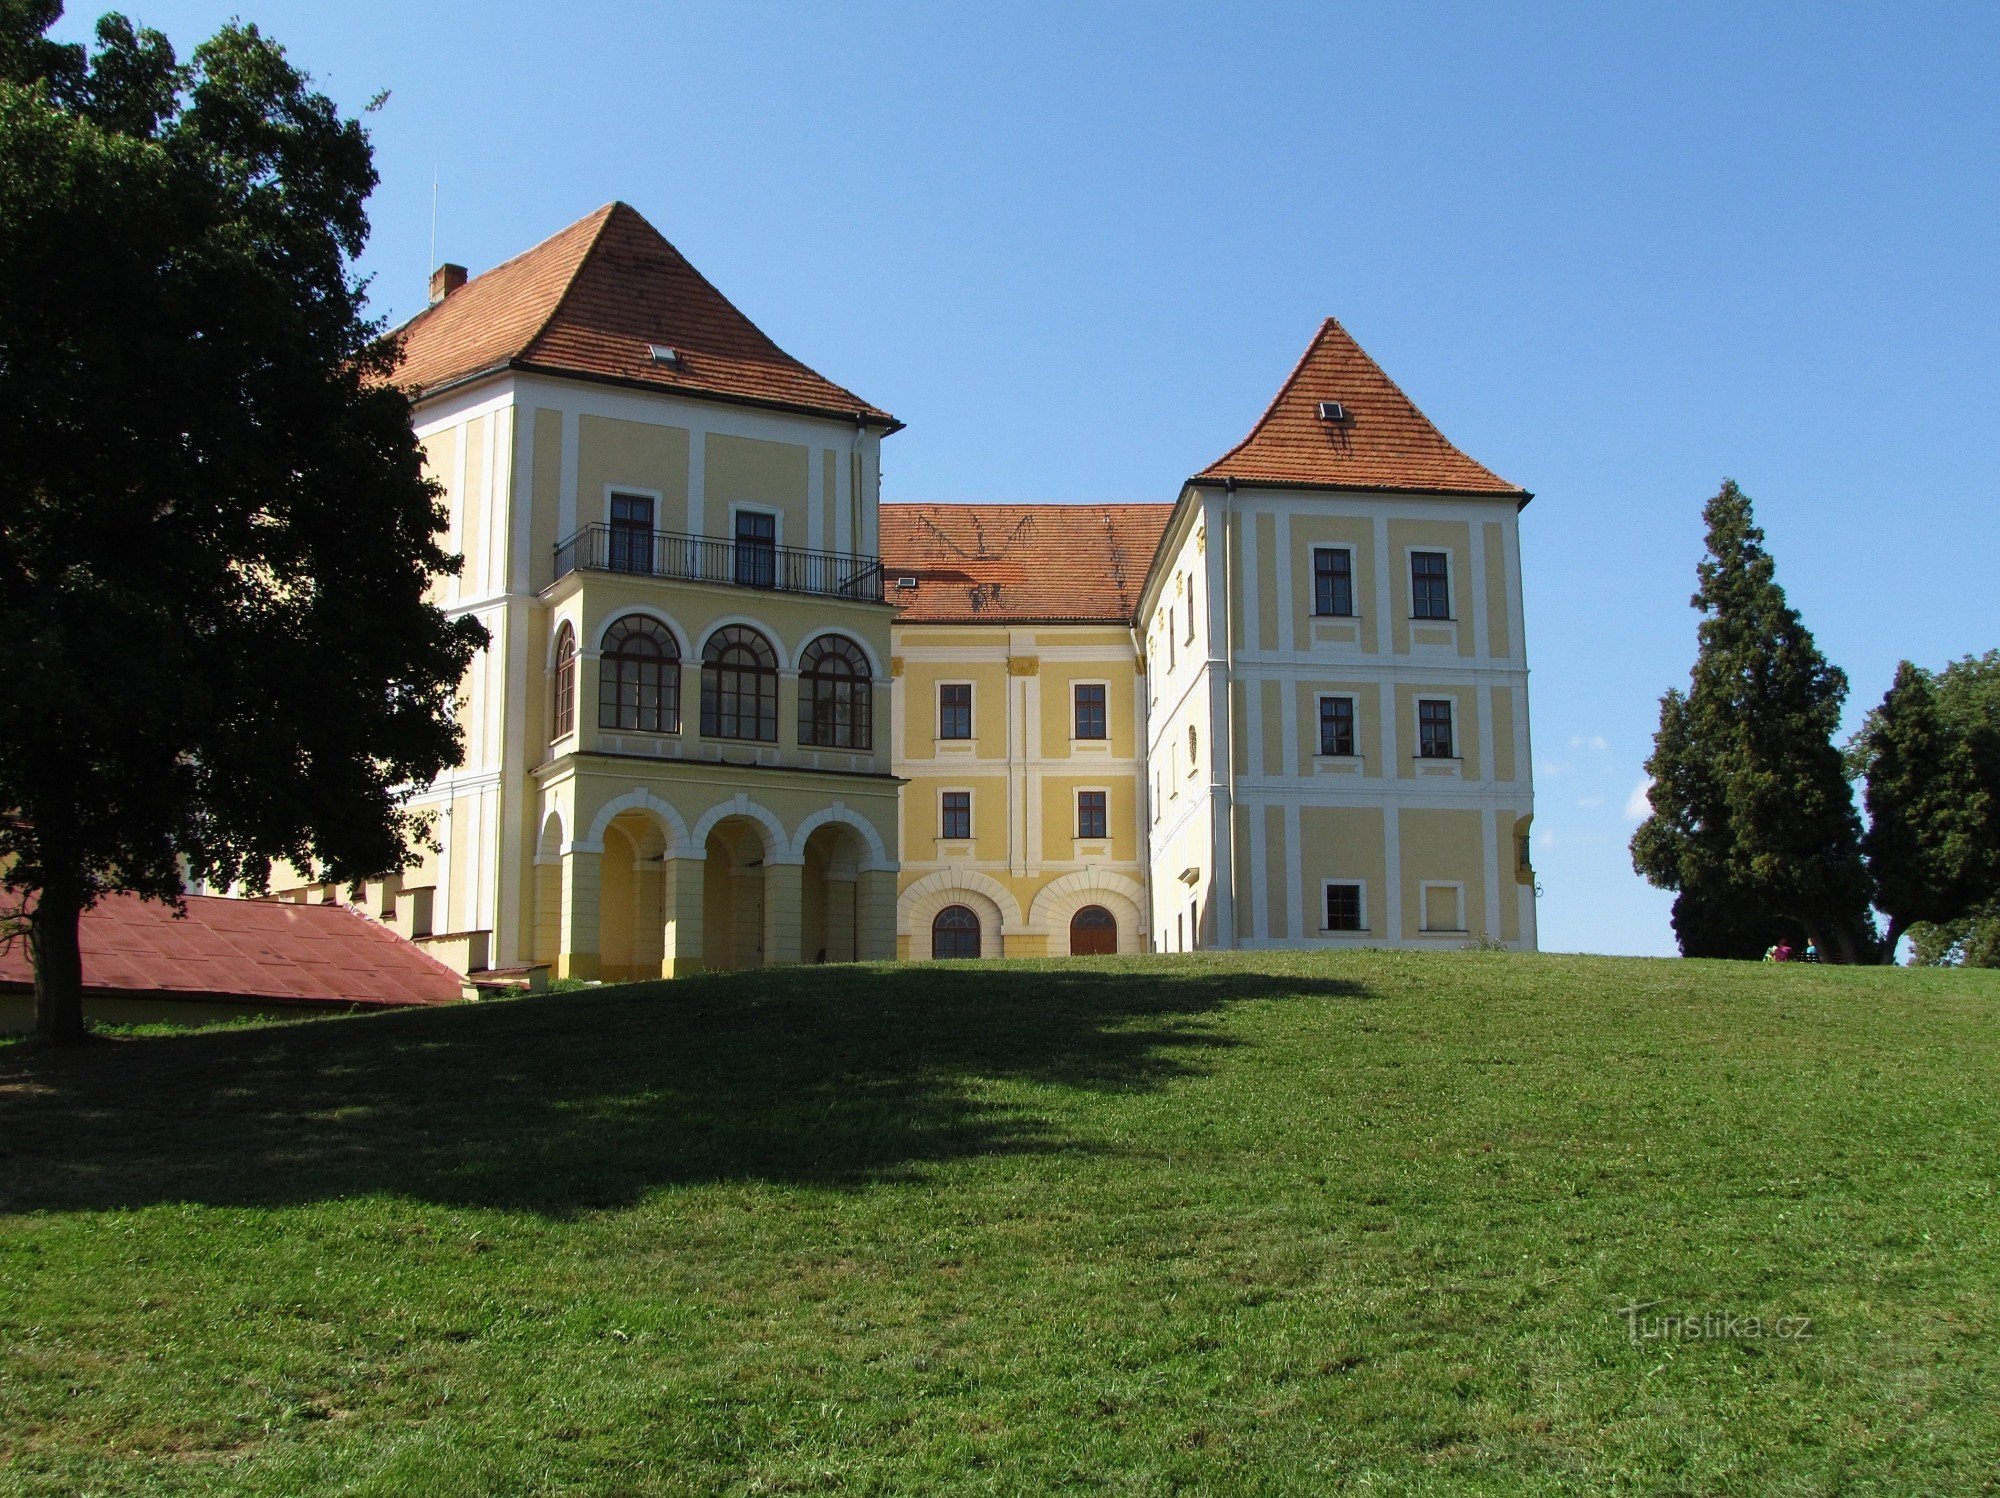 Ogled dvorca v Letovicah